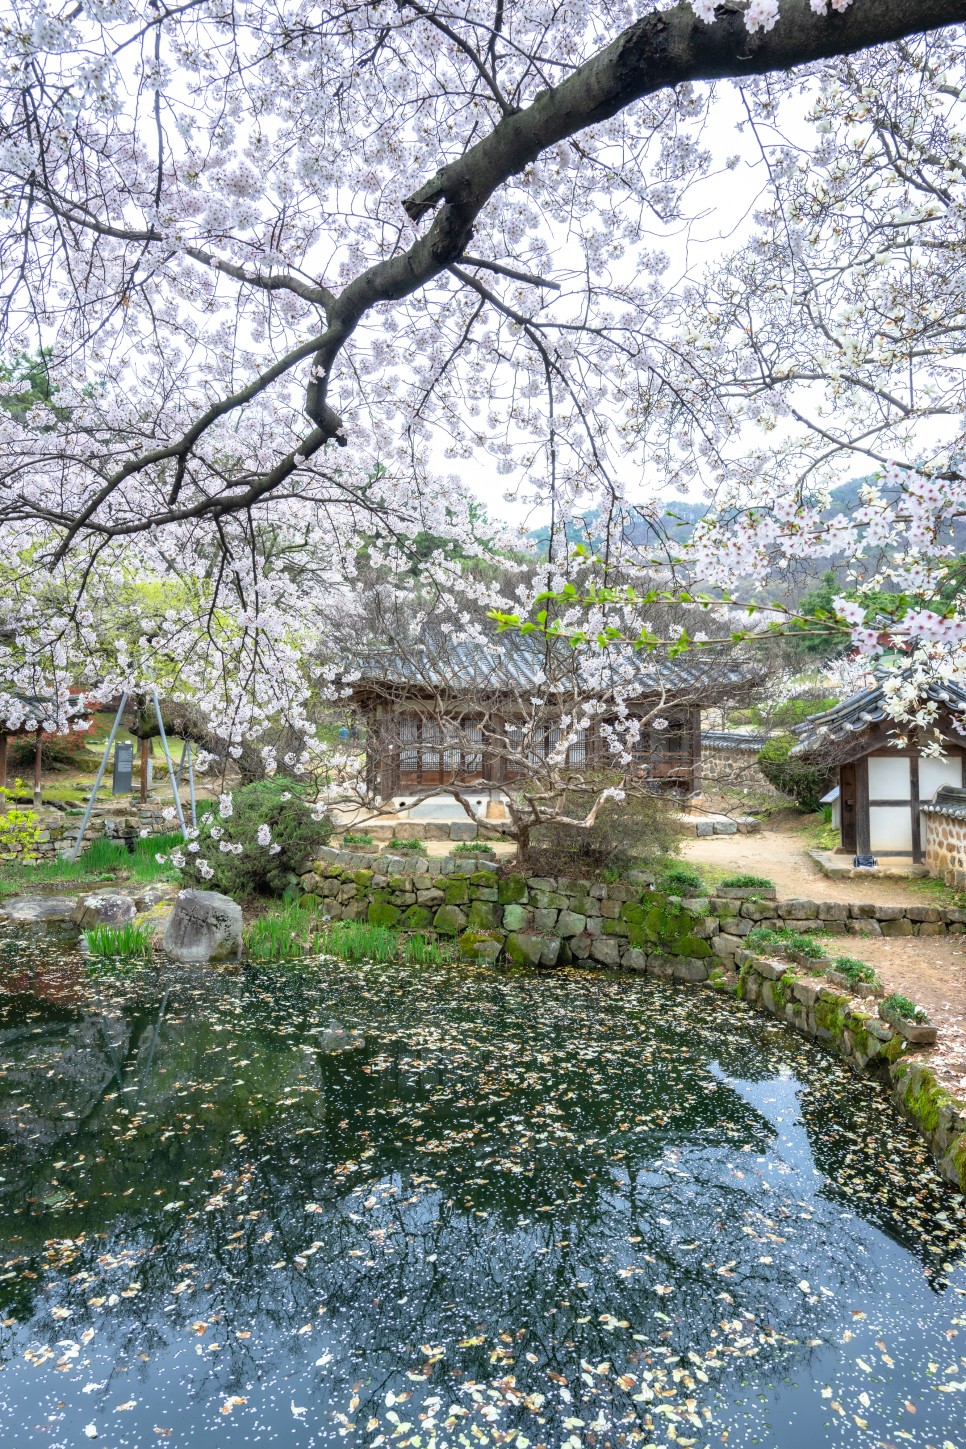 대전 벚꽃 명소 테미공원과 우암사적공원 남간정사 벚꽃 나들이